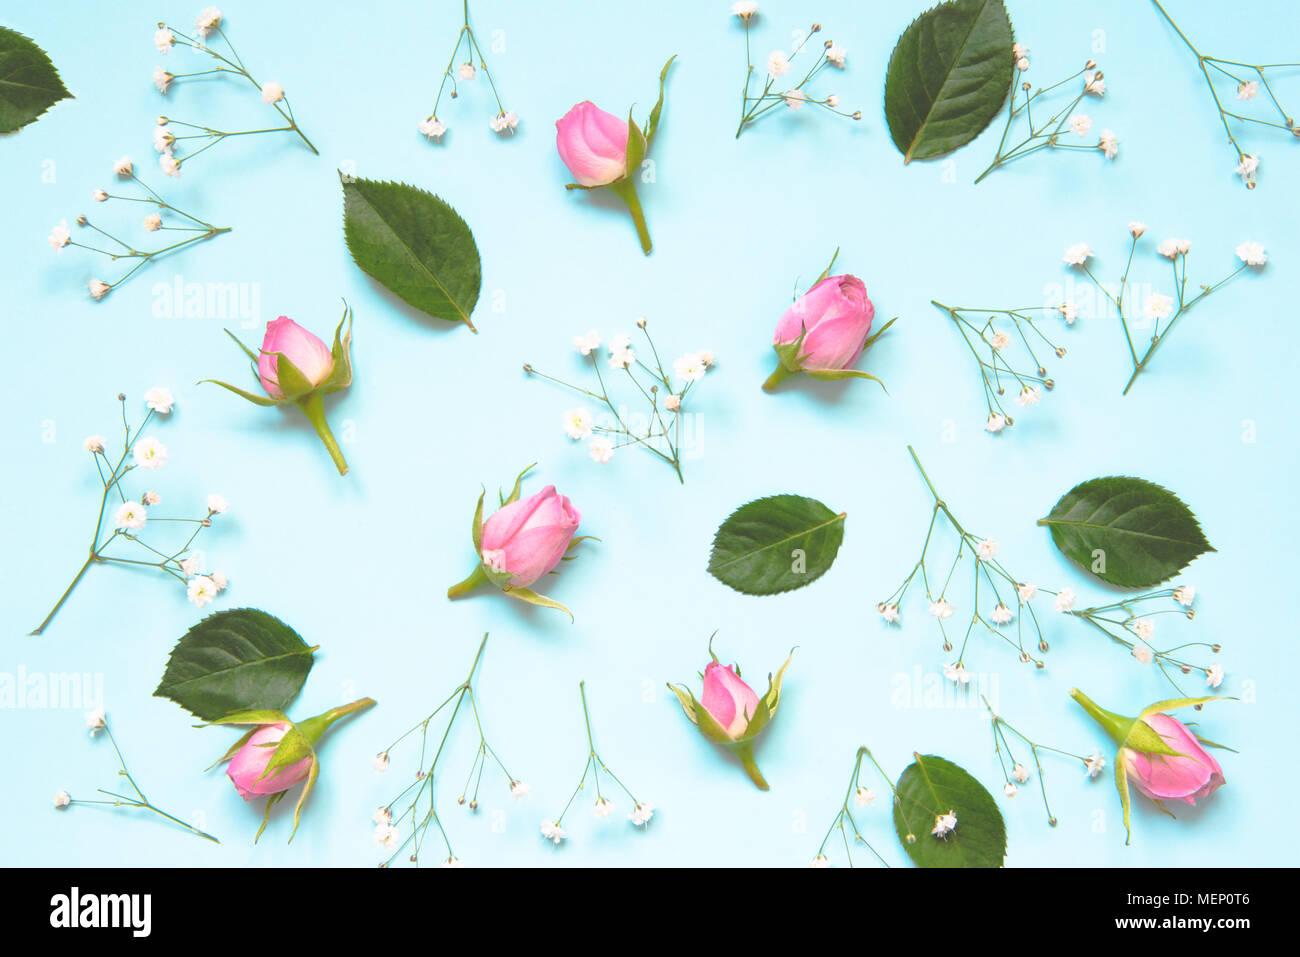 Vue de dessus de roses roses et de feuilles vertes sur fond bleu. Abstract floral background. Banque D'Images